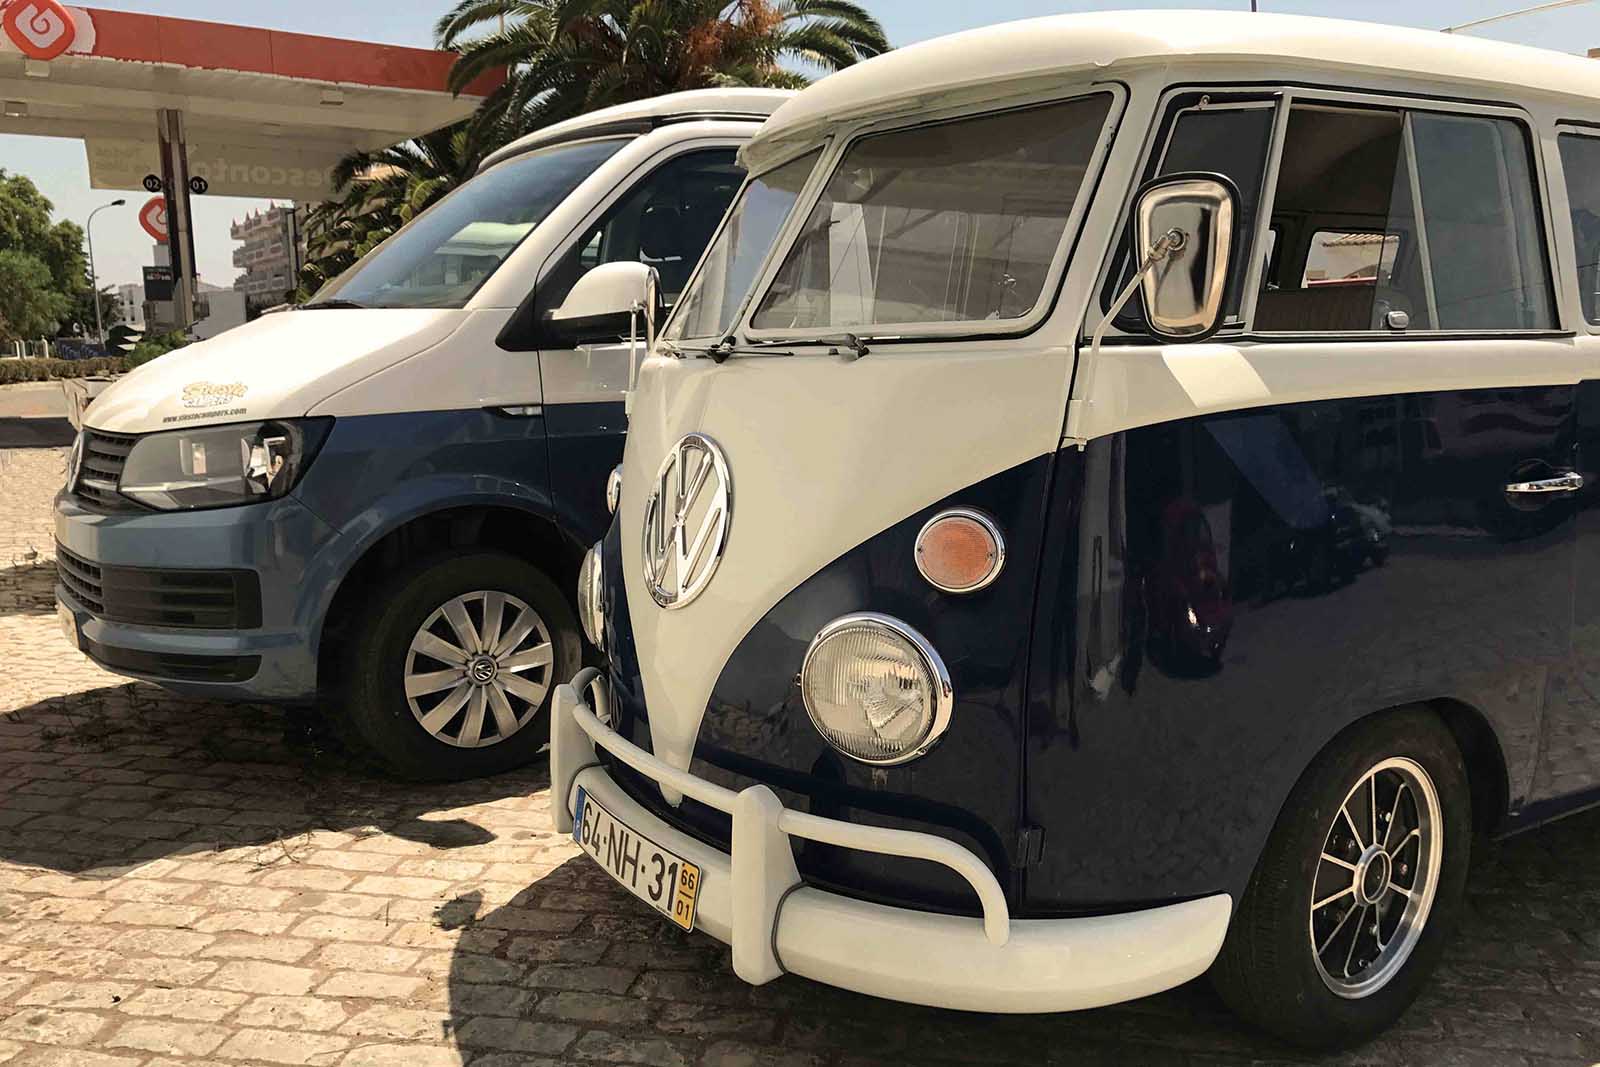 Modern and vintage VW camper vans at the Siesta Campers van rental shop.